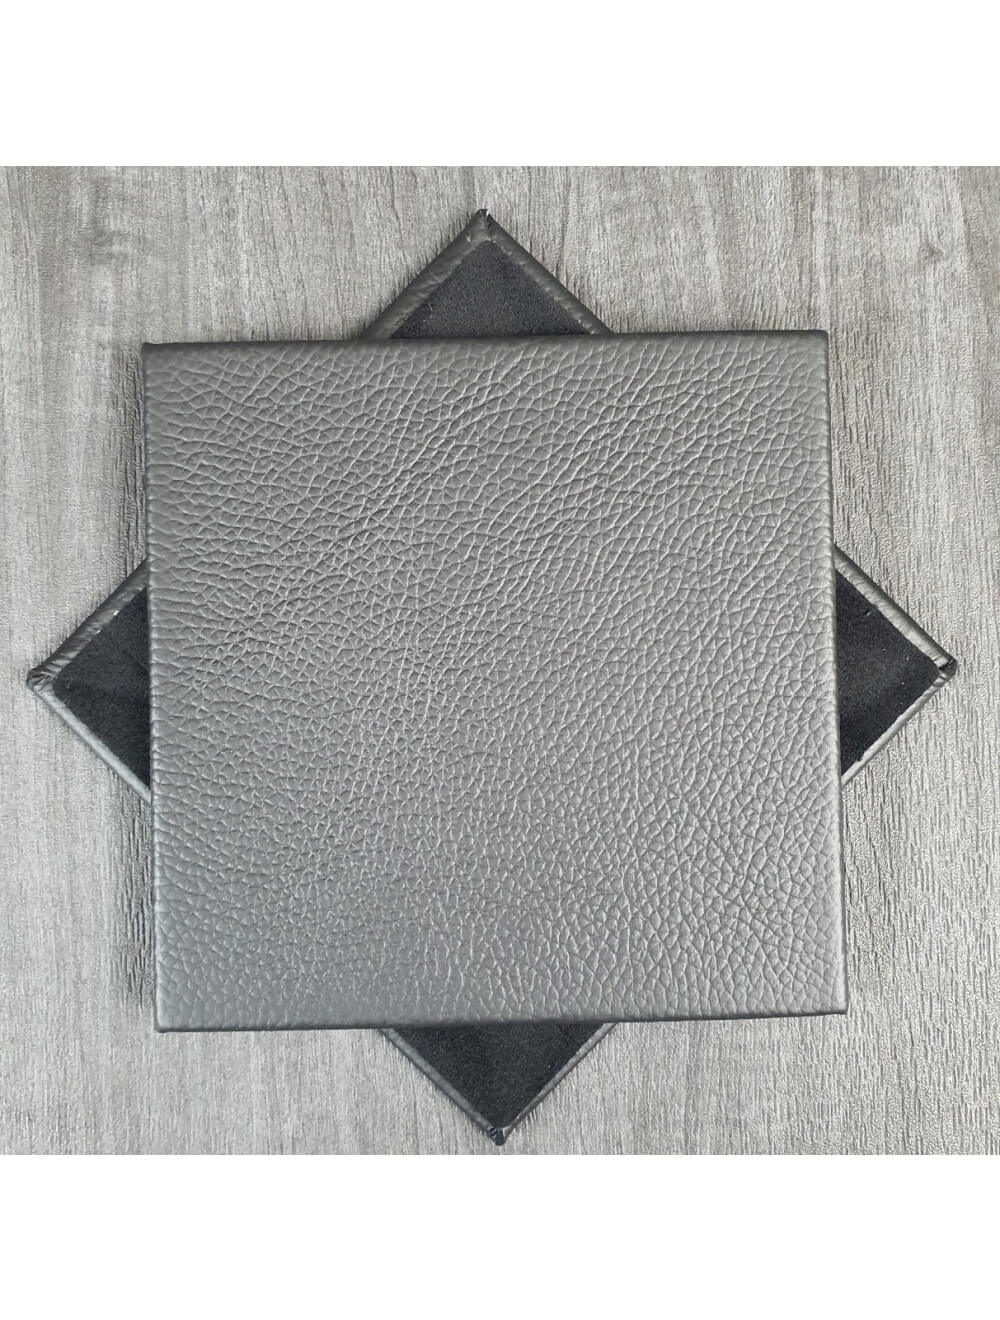 Coaster de cuero Black Shelly: 10 cm SQ (artículo de venta)